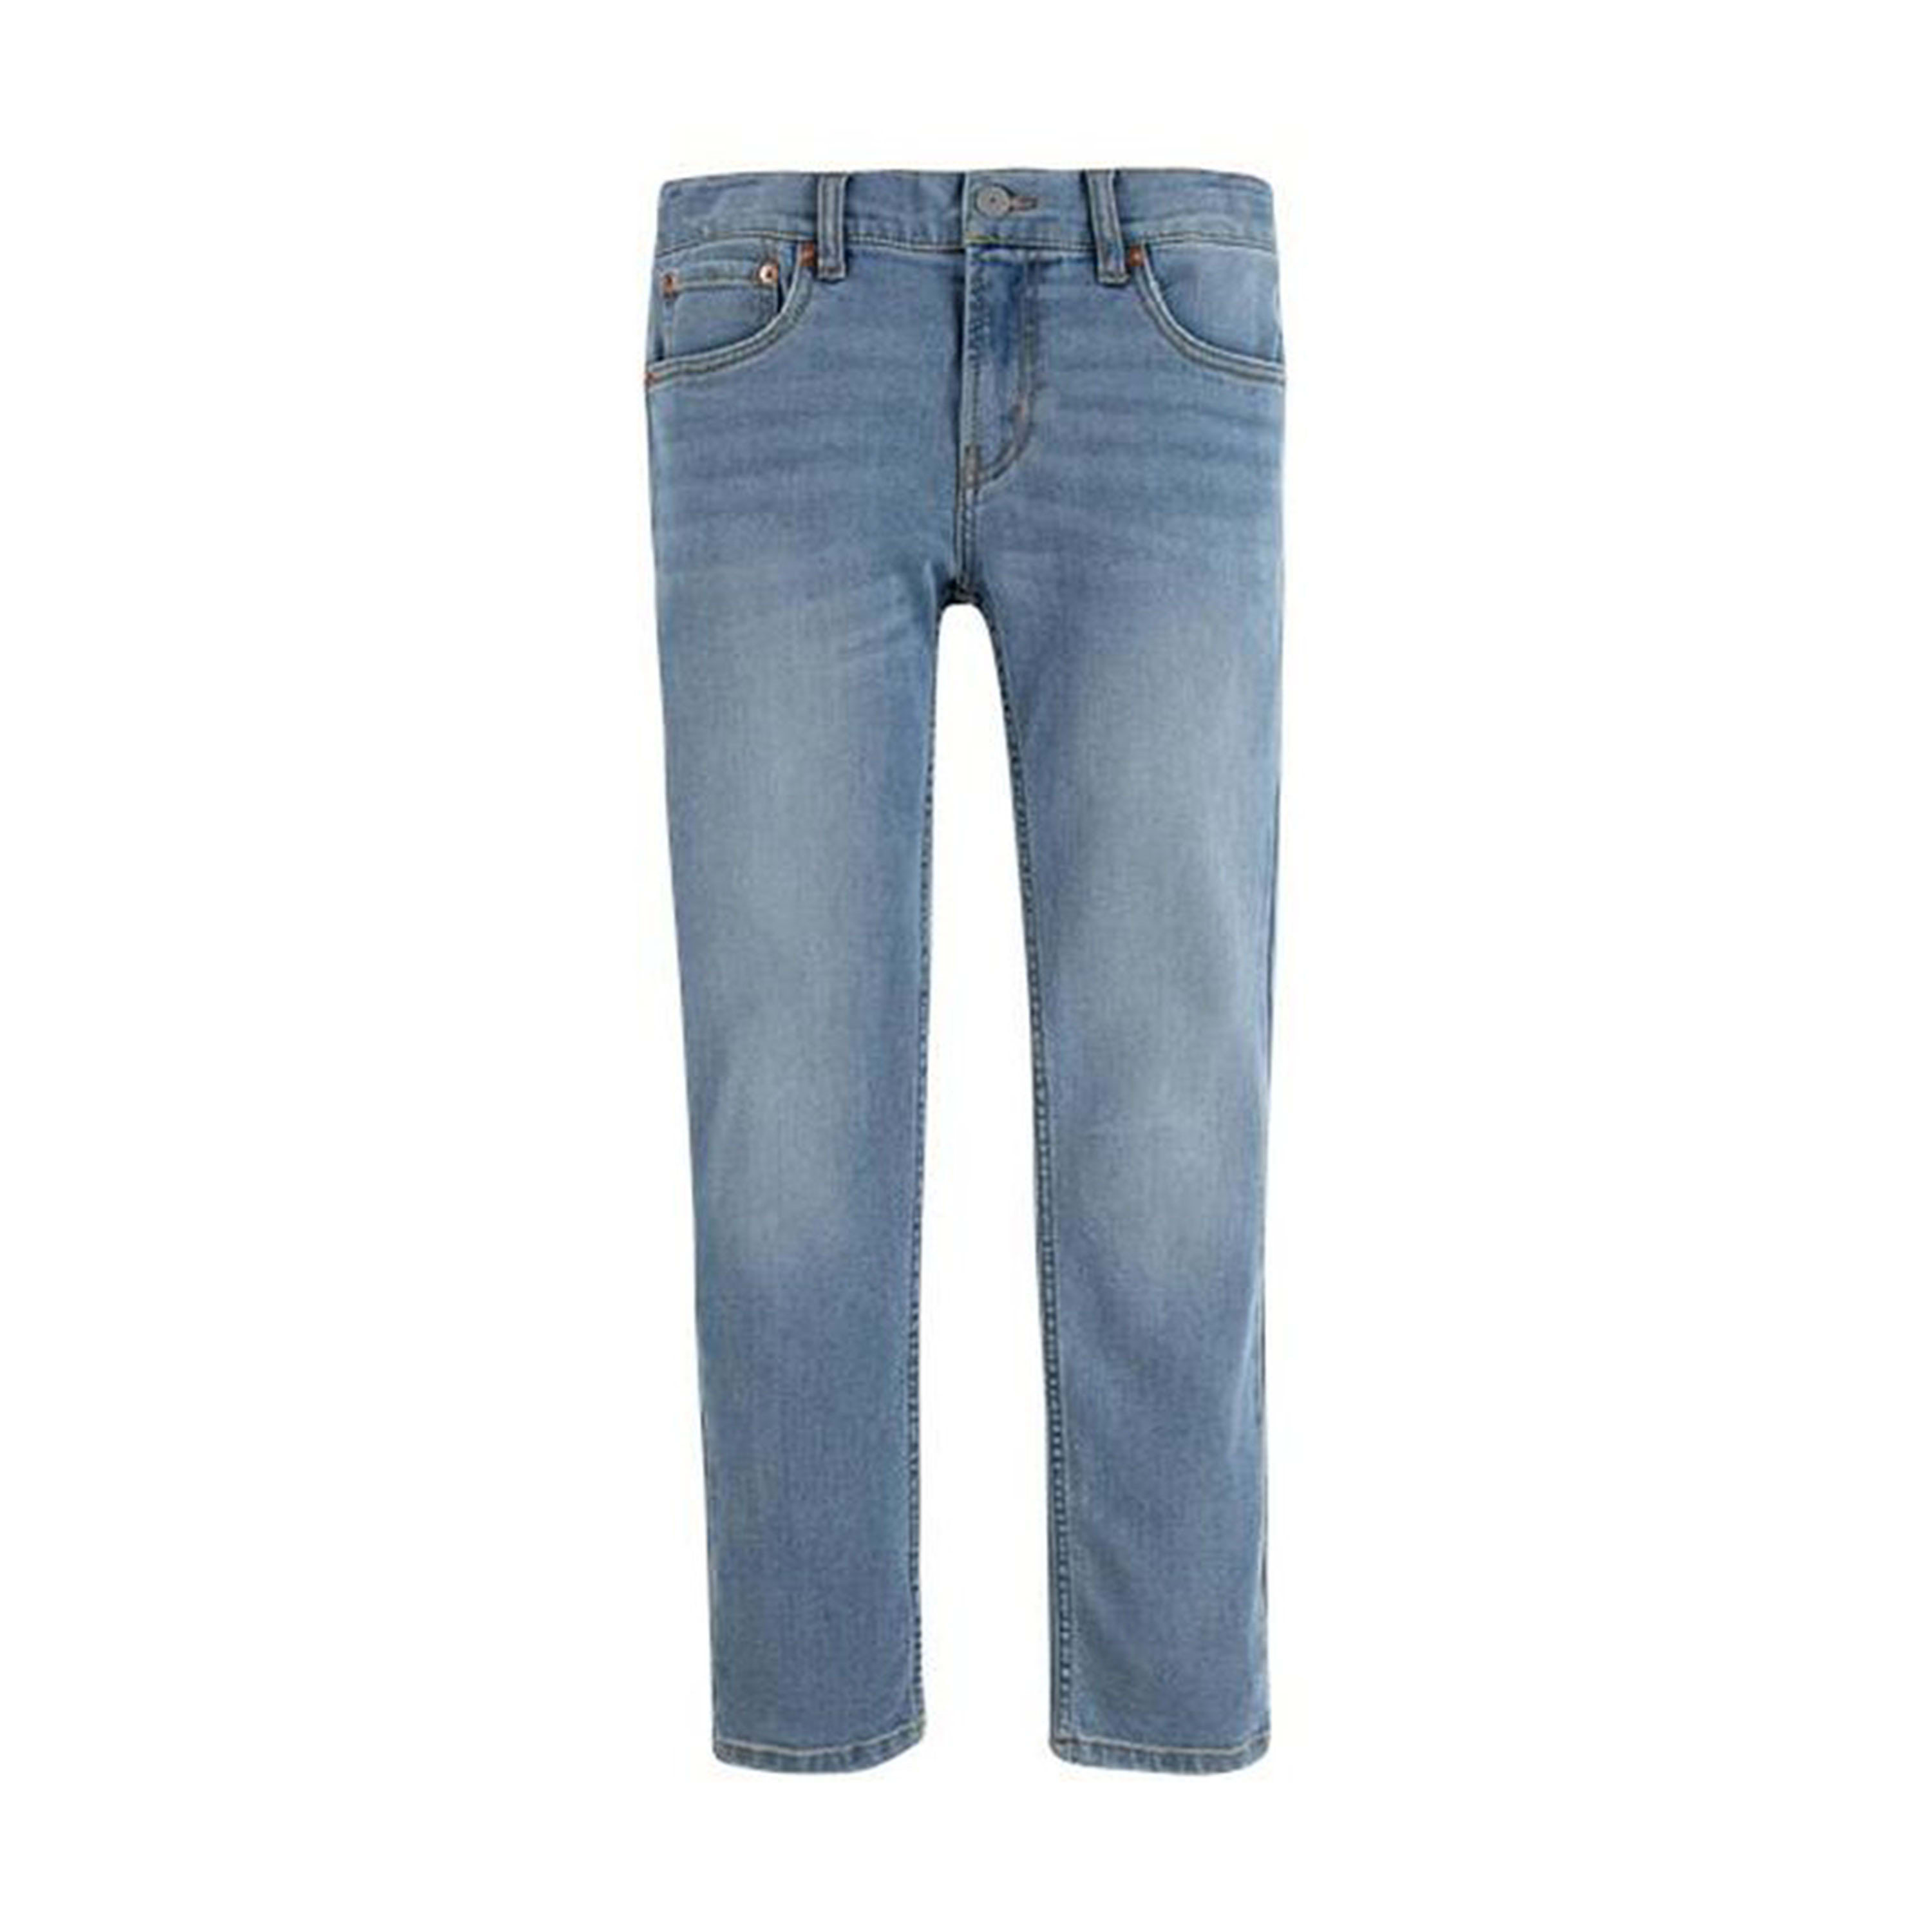 Jeans 512 Pant Slim Taper Aura